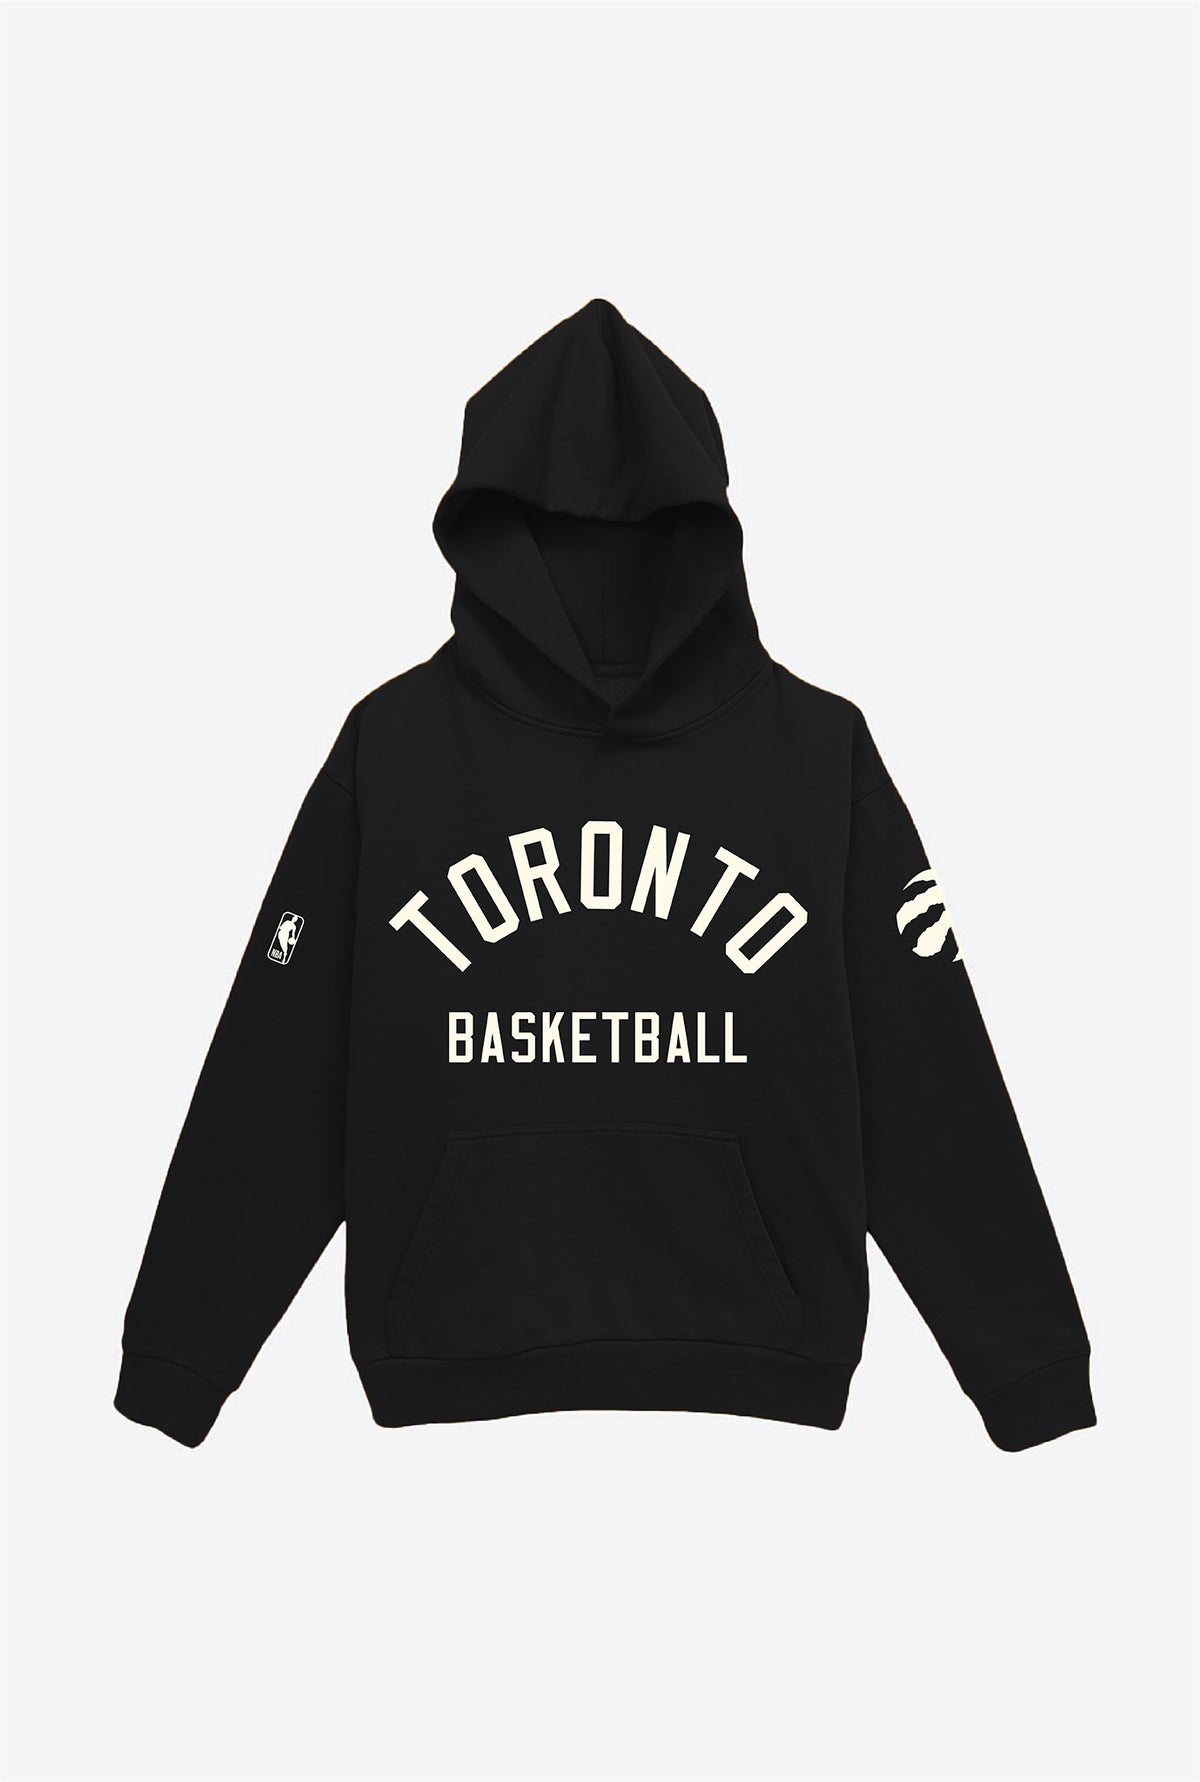 Toronto Raptors Heavyweight Hoodie - Black